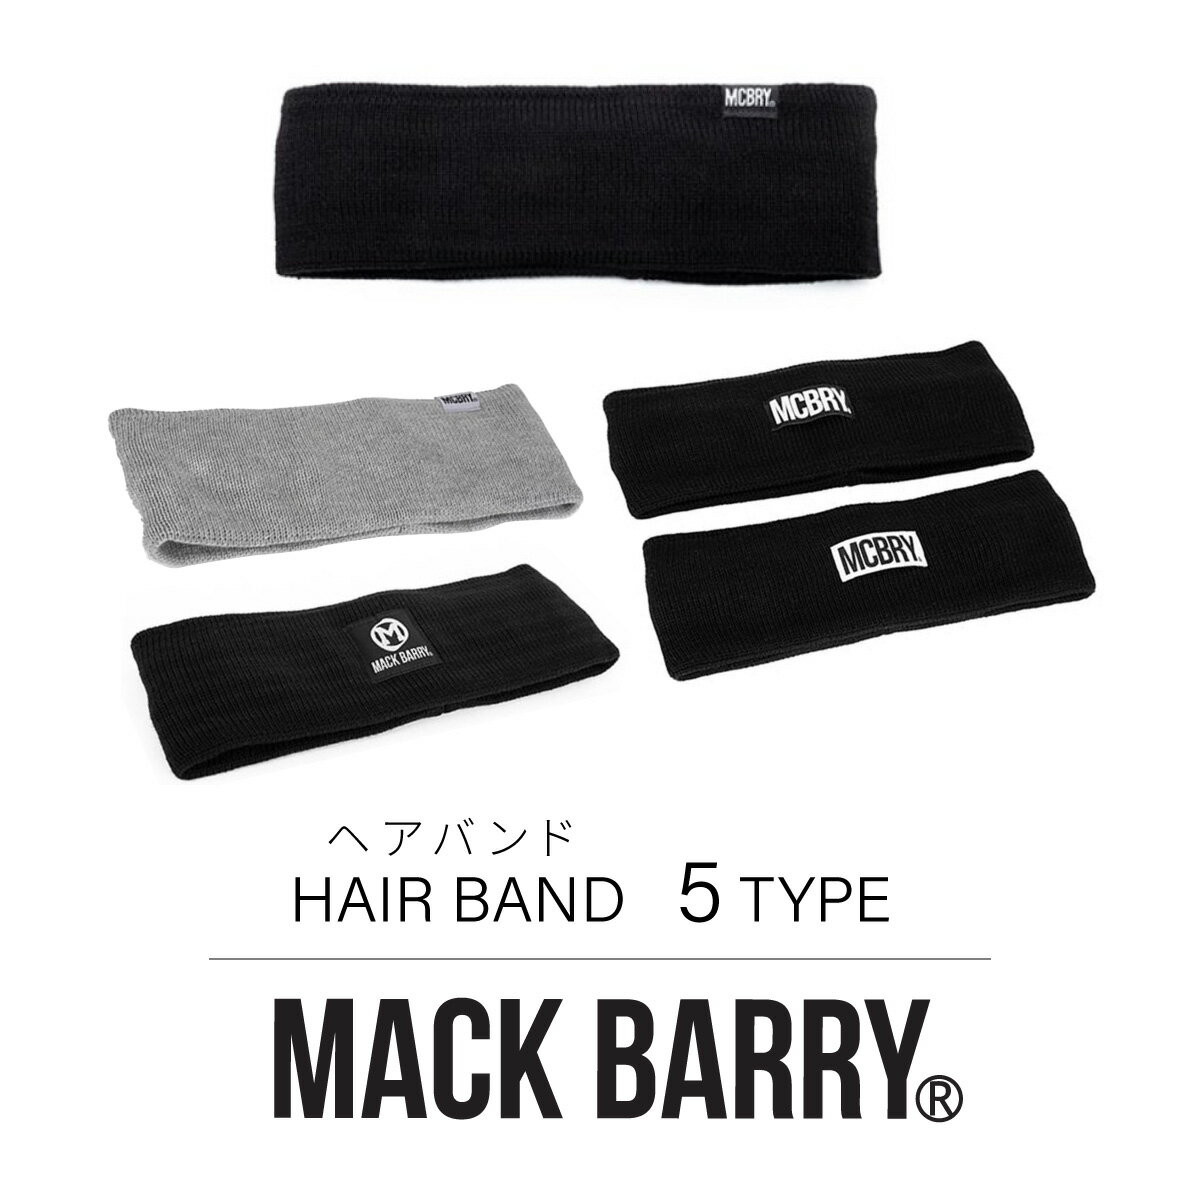 【あす楽対応】MACK BARRY 国内正規品 ヘアバンド ヘアアクセサリー HAIR BAND メンズ レディース 韓国 K-POP ファッション シンプル おしゃれ ブラック プレゼント マクバリー 海外ブランド 黒 白 グレー mack barry